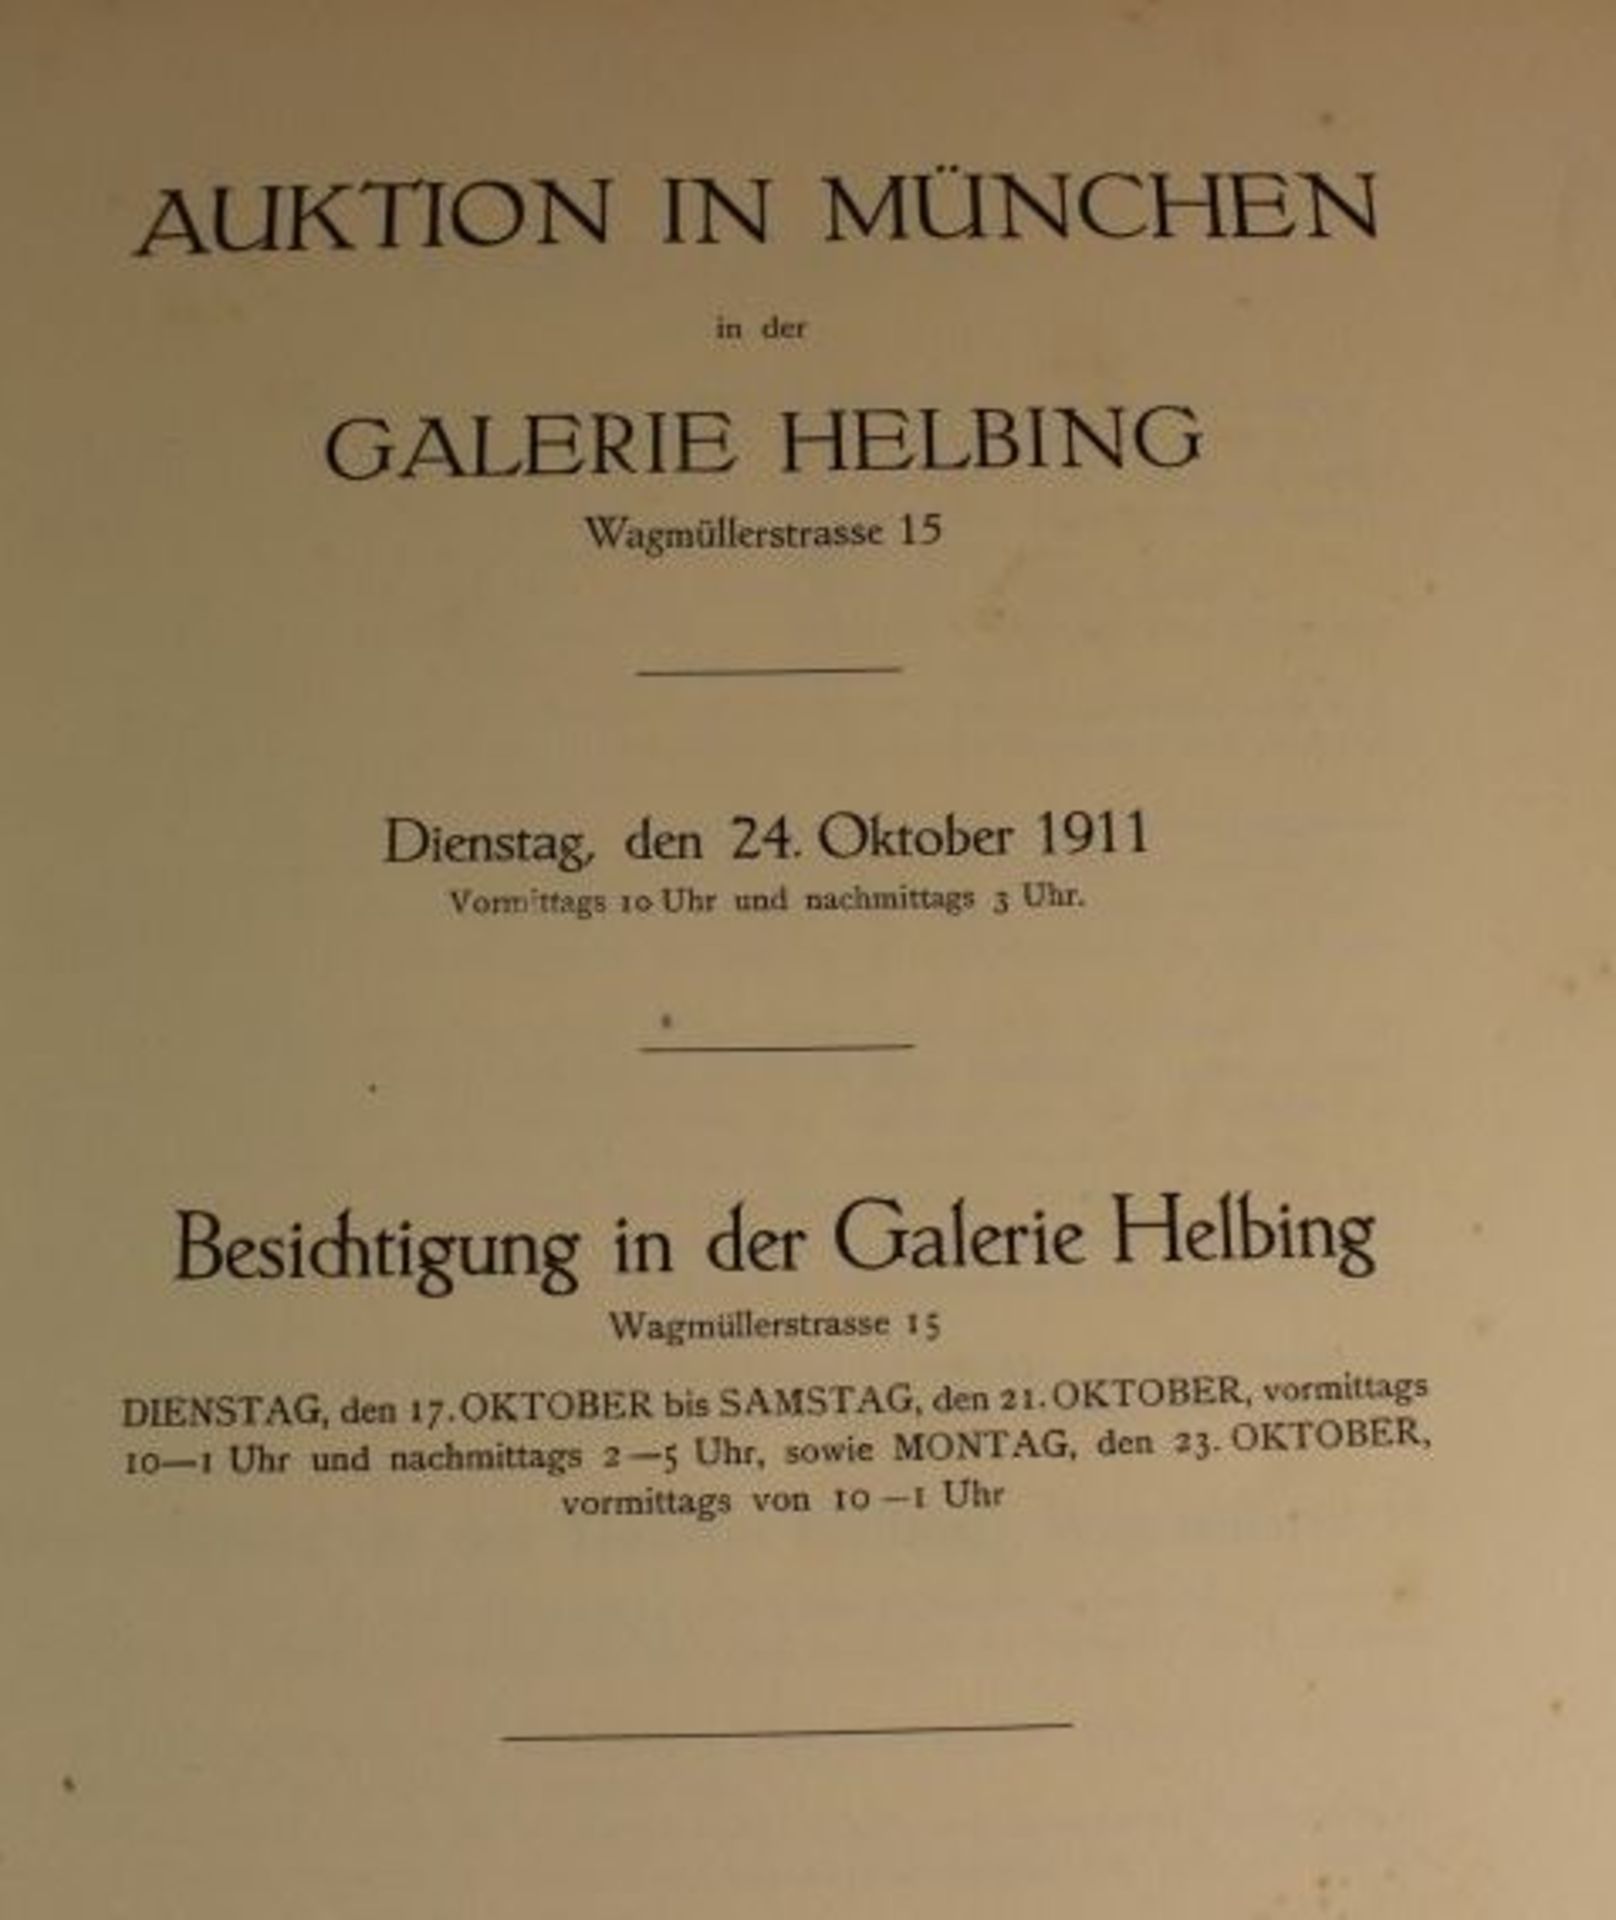 Auktionskatalog "Galerie Helbing in München" vom 24. Oktober 1911, Einband fehlt, Alters-u. - Bild 3 aus 5